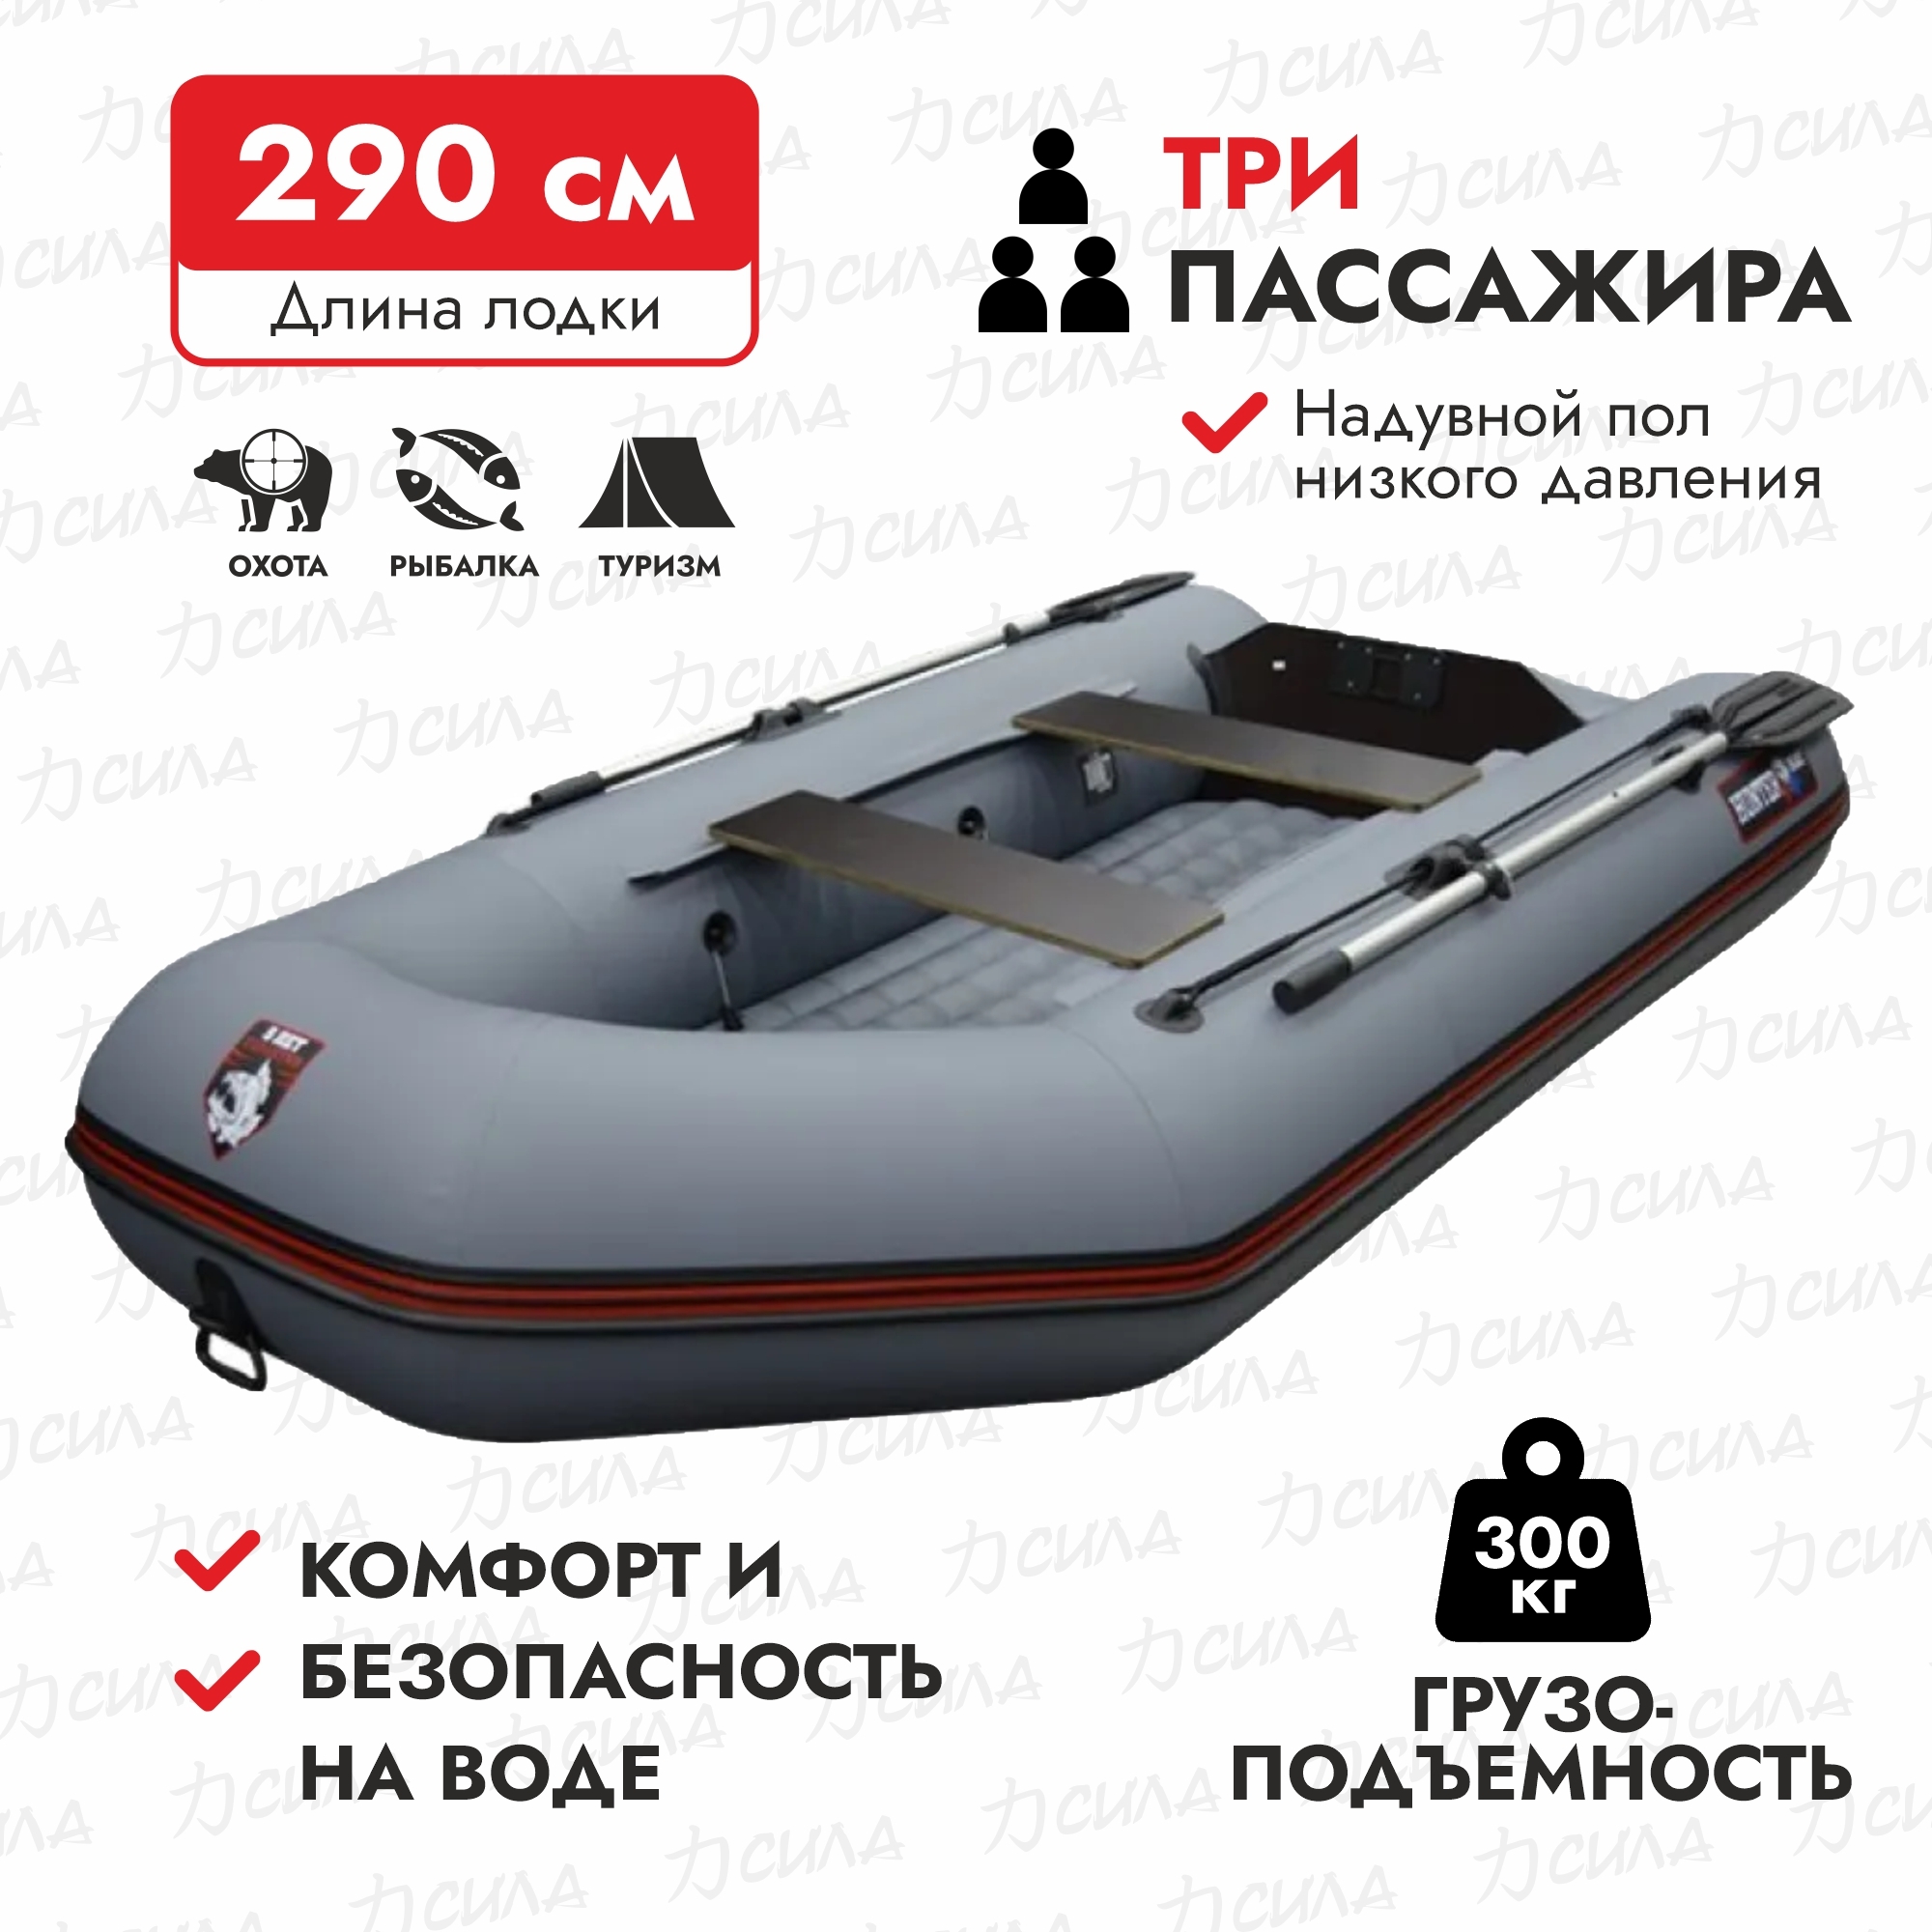 HunterboatЛодка,290см,